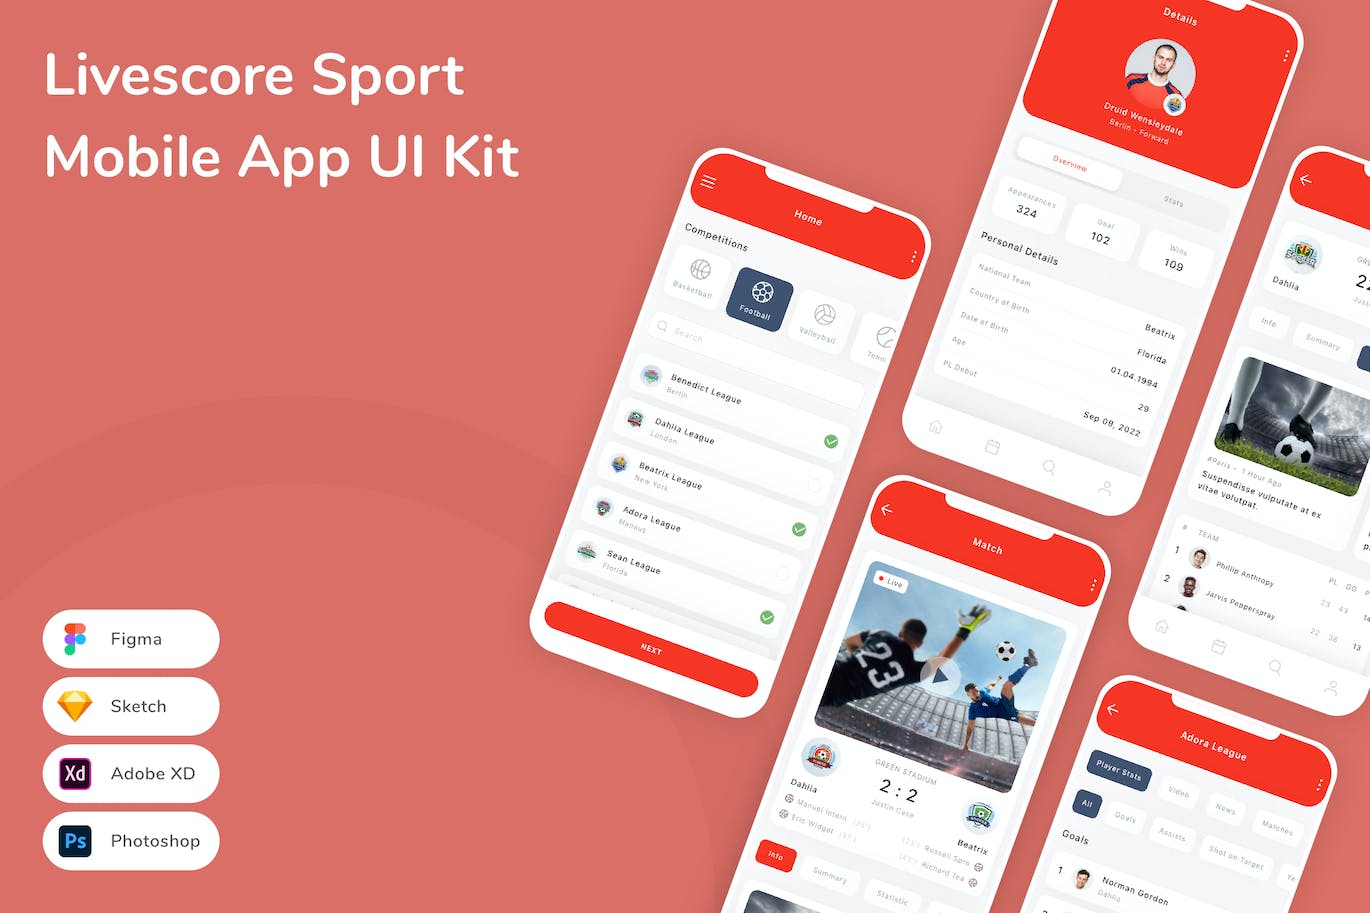 即时比分体育App应用程序UI工具包素材 Livescore Sport Mobile App UI Kit APP UI 第1张